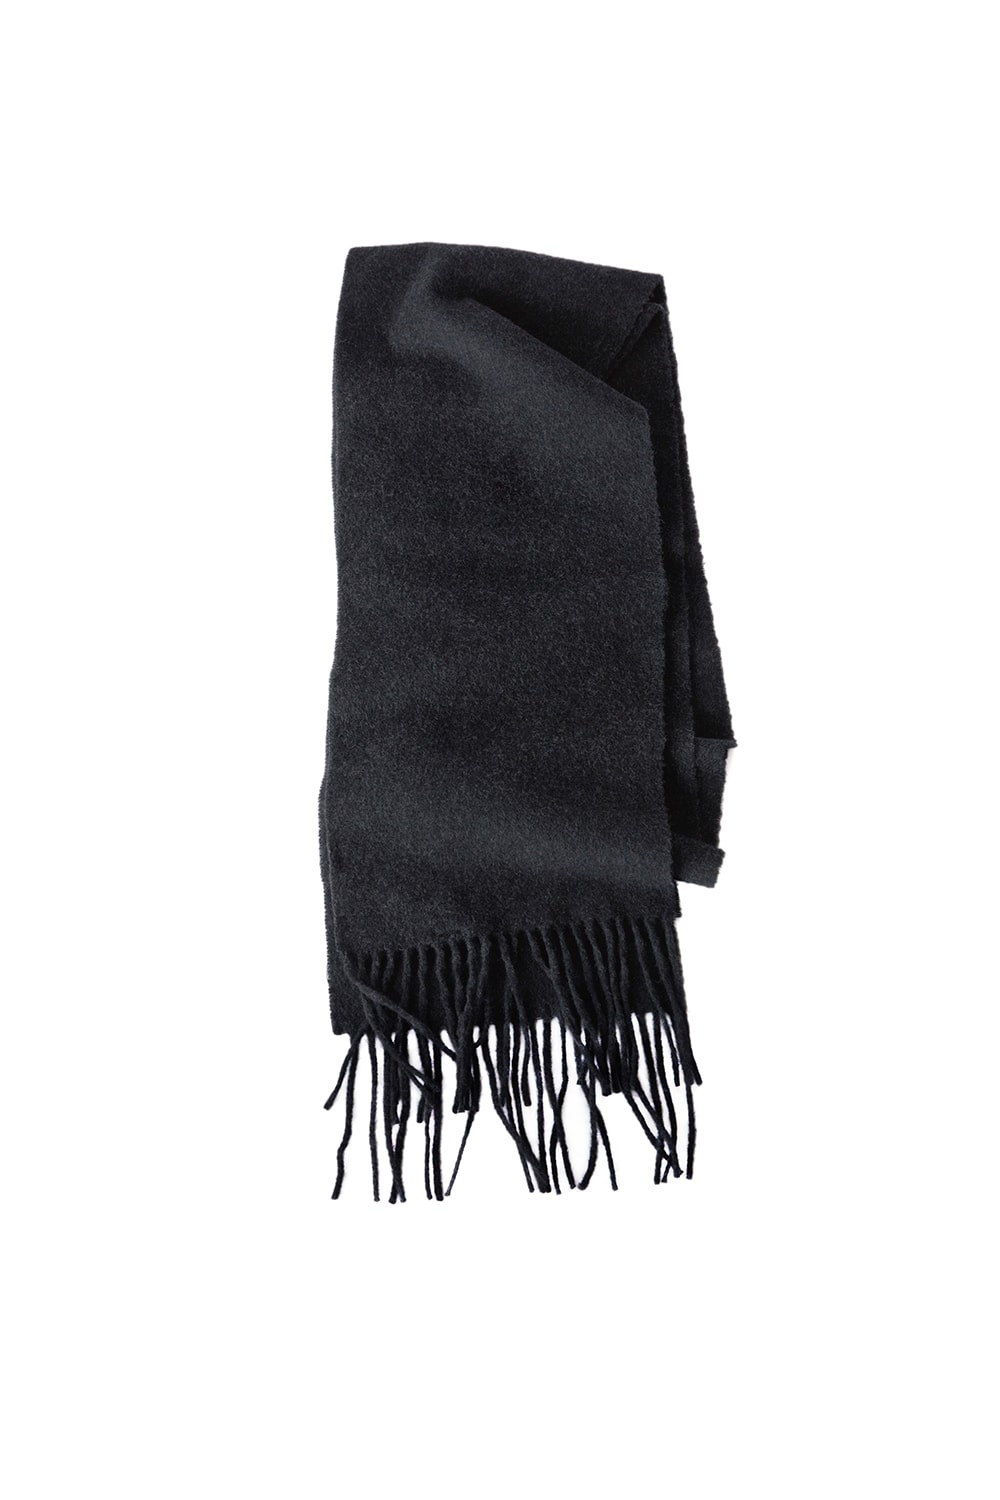 아크네 스튜디오 연말 선물 스카프 겨울 머플러 2017 acne studio holiday gifts scarfs